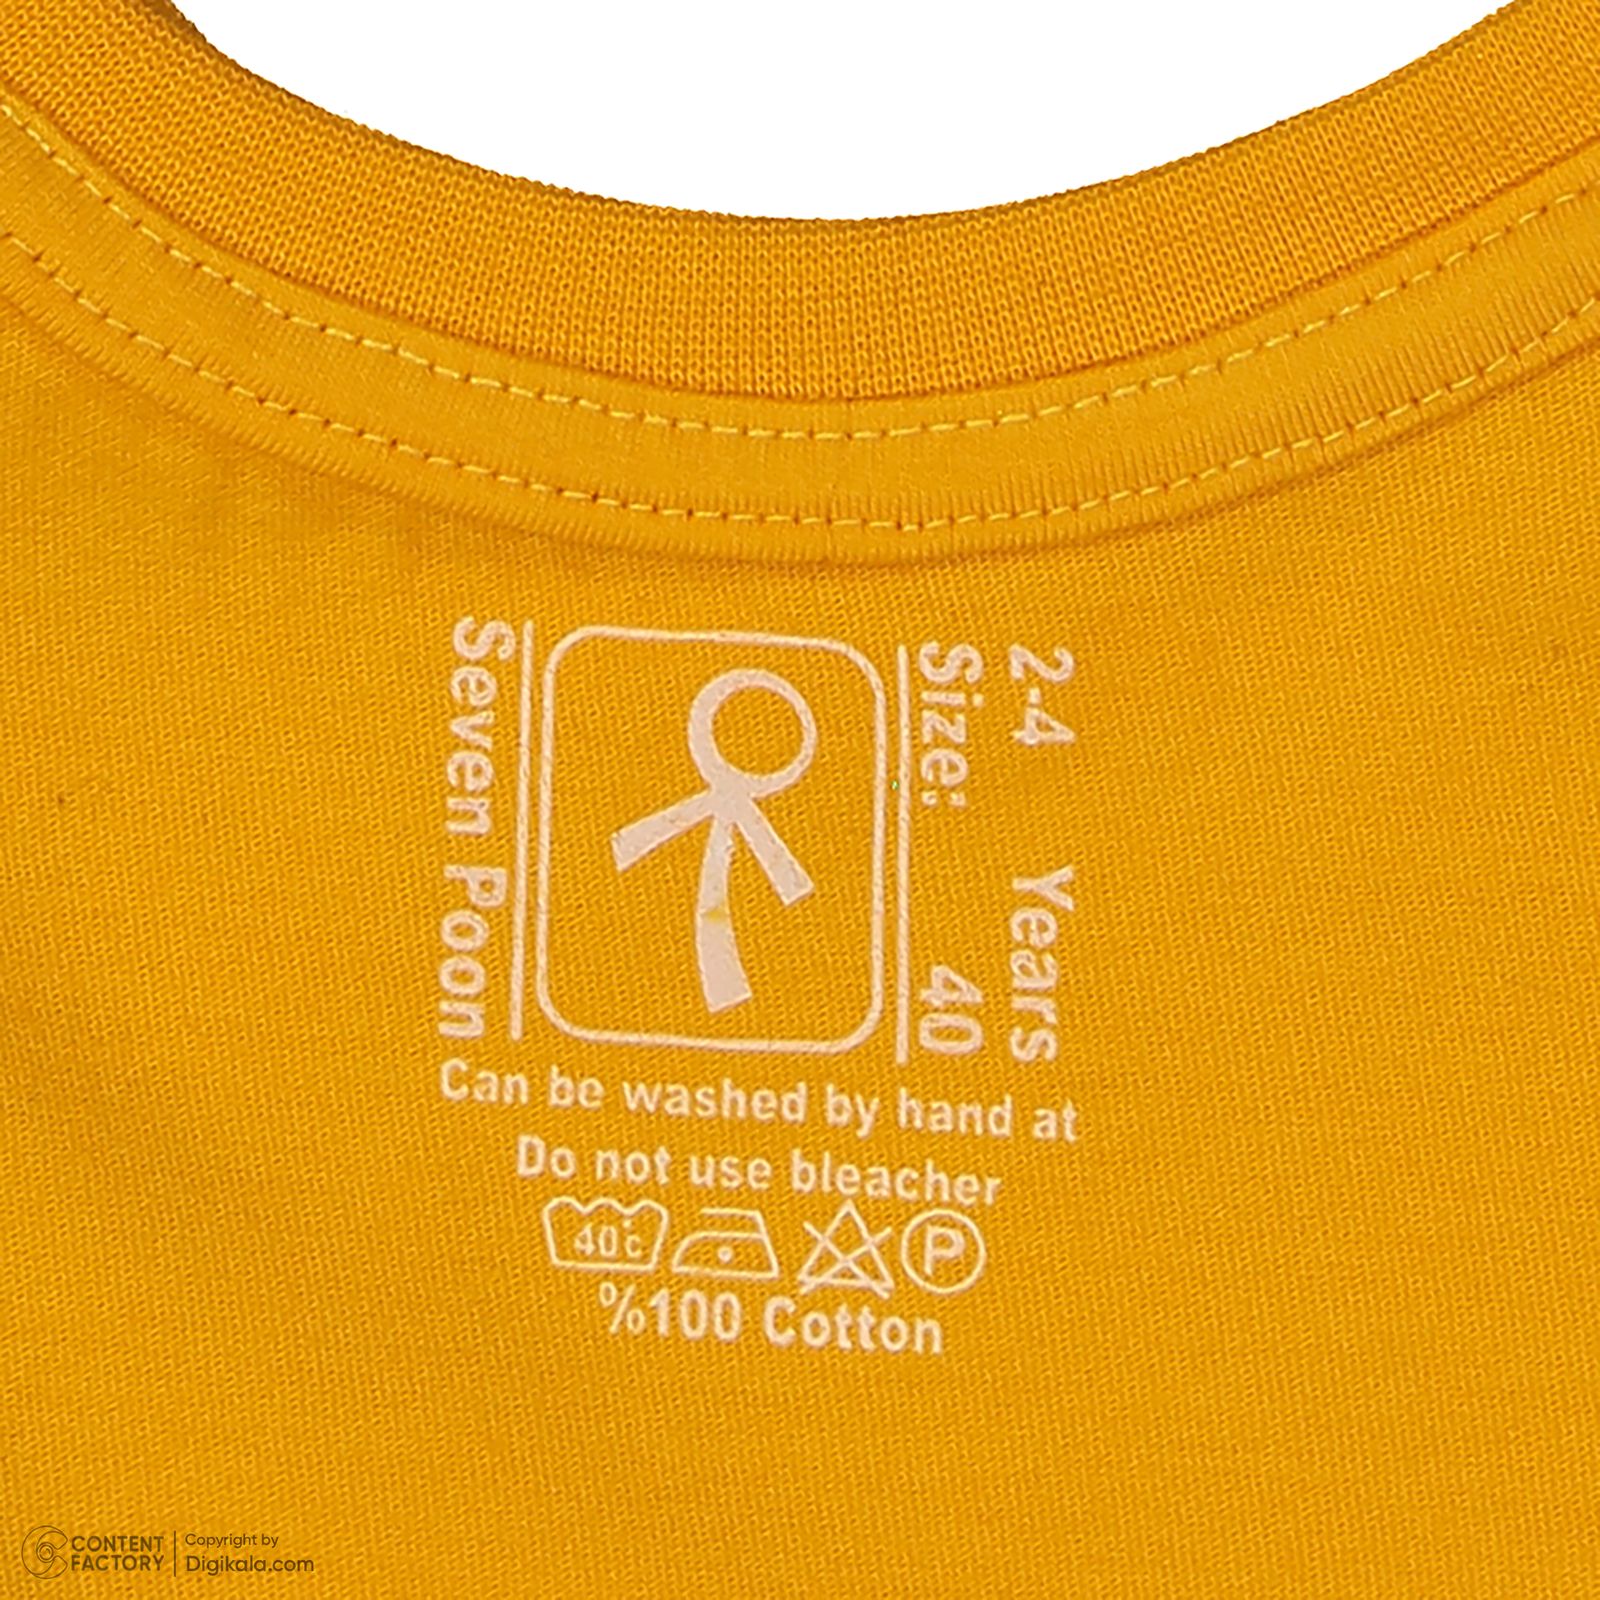 ست تی شرت و شلوارک پسرانه سون پون مدل 13911092 رنگ خردلی -  - 9